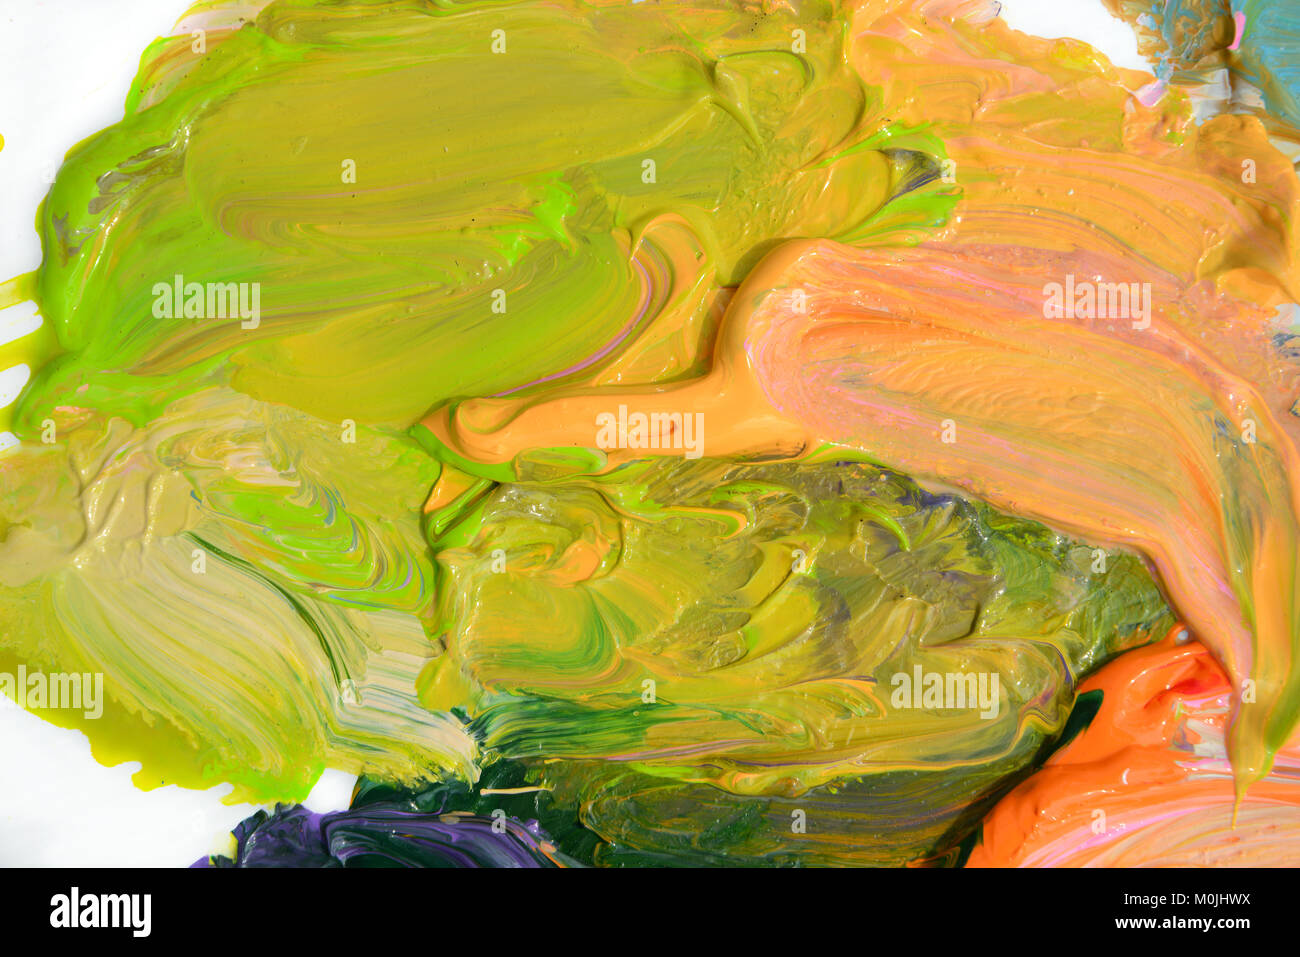 Colorata pittura a olio di diversi colori su una tavolozza su sfondo bianco Foto Stock